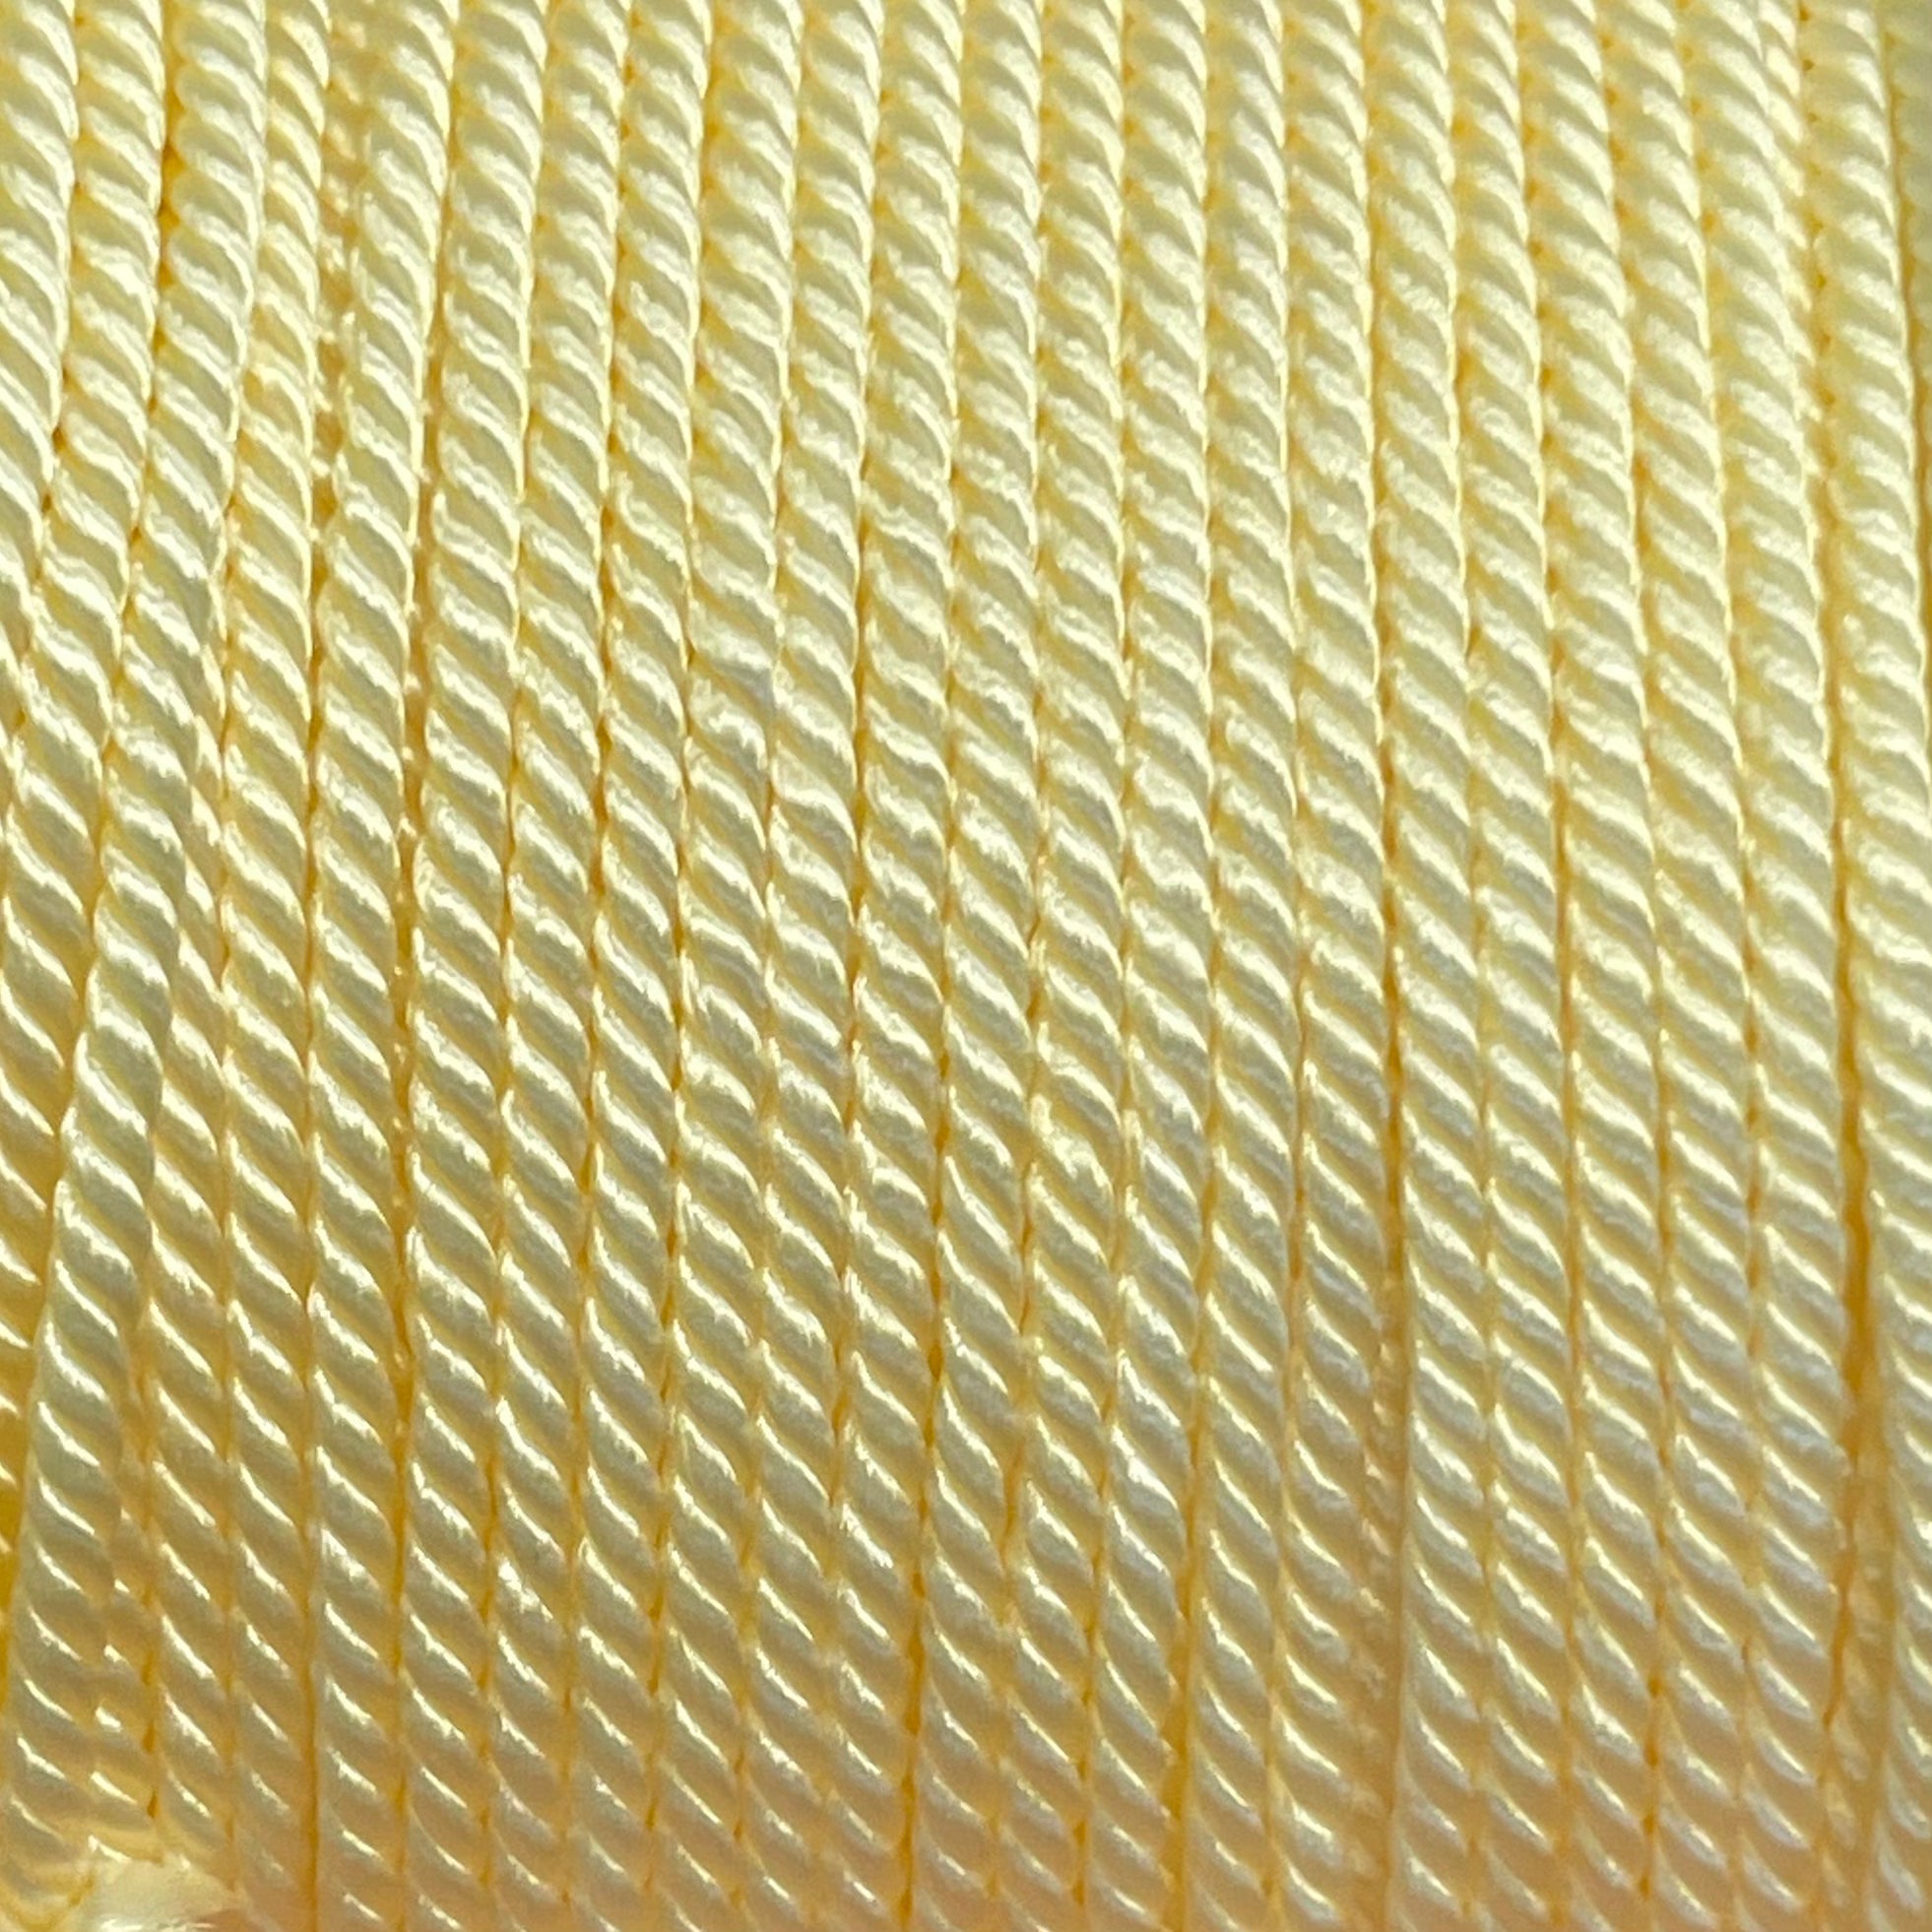 Nylon gedraaid koord licht geel 2mm - 2 meter-koord-Kraaltjes van Renate